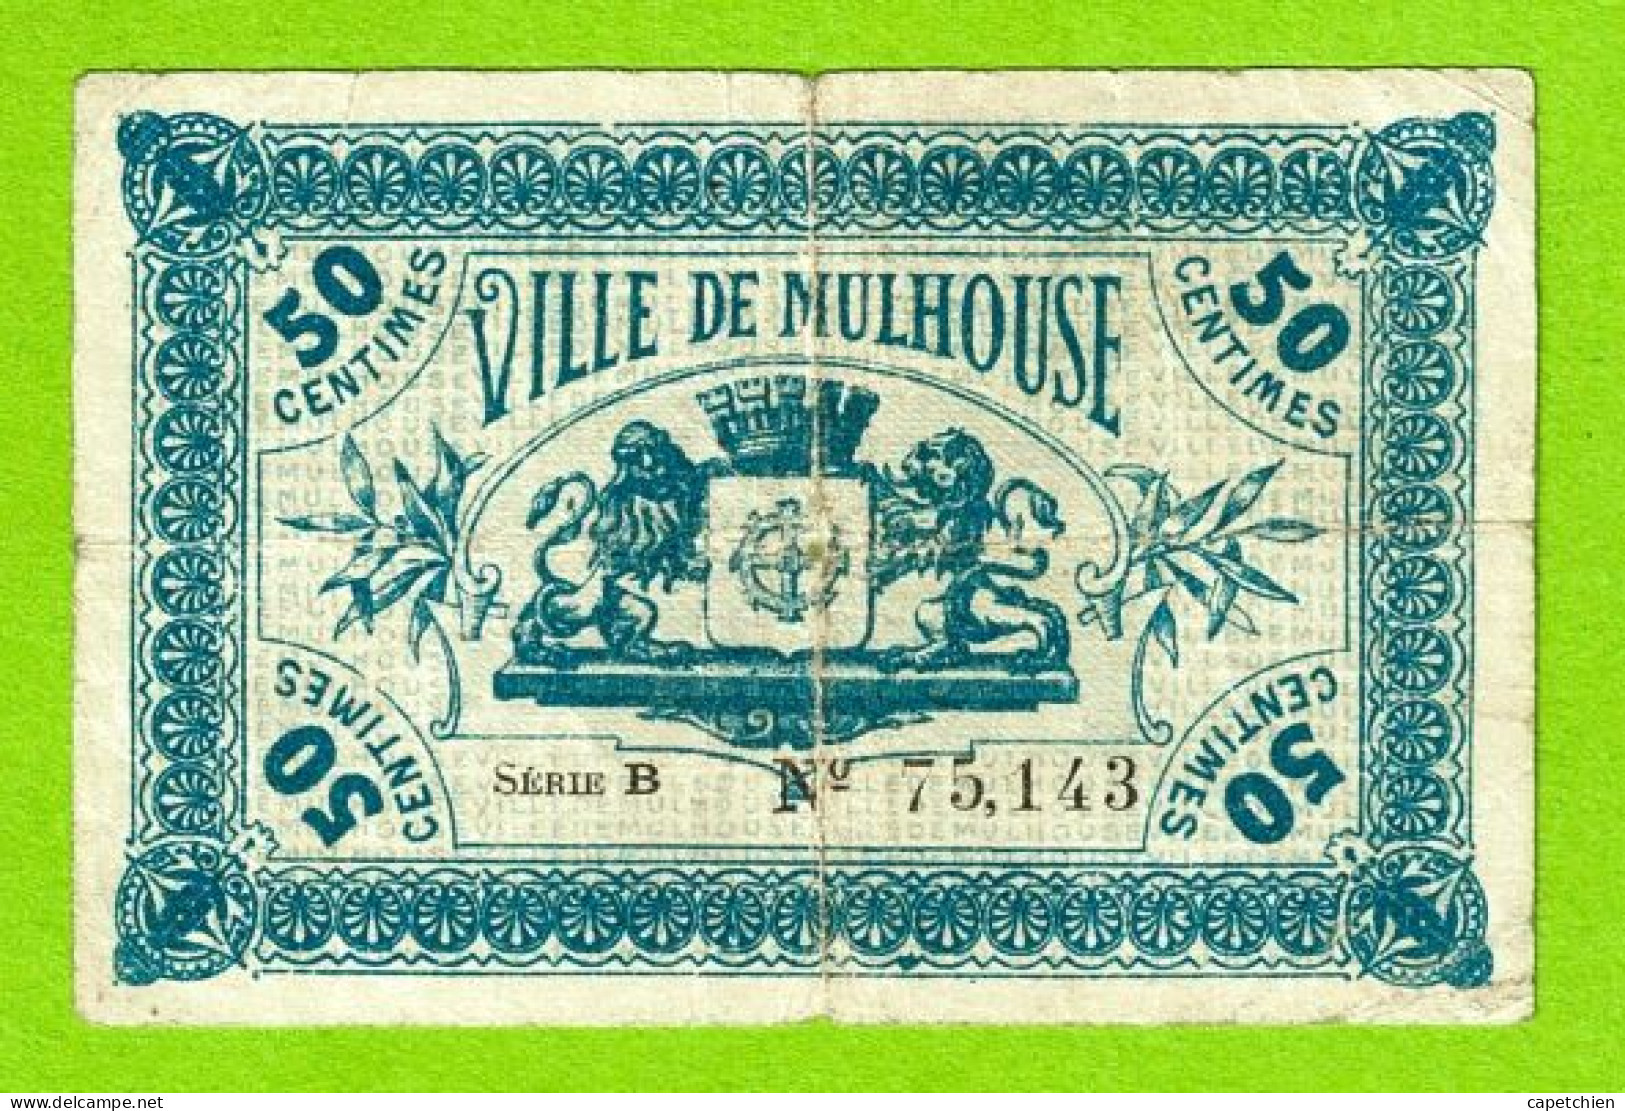 FRANCE / MULHOUSE / 50 CENTIMES / 28 DECEMBRE 1918 / N° 75143 - SERIE B - Chambre De Commerce